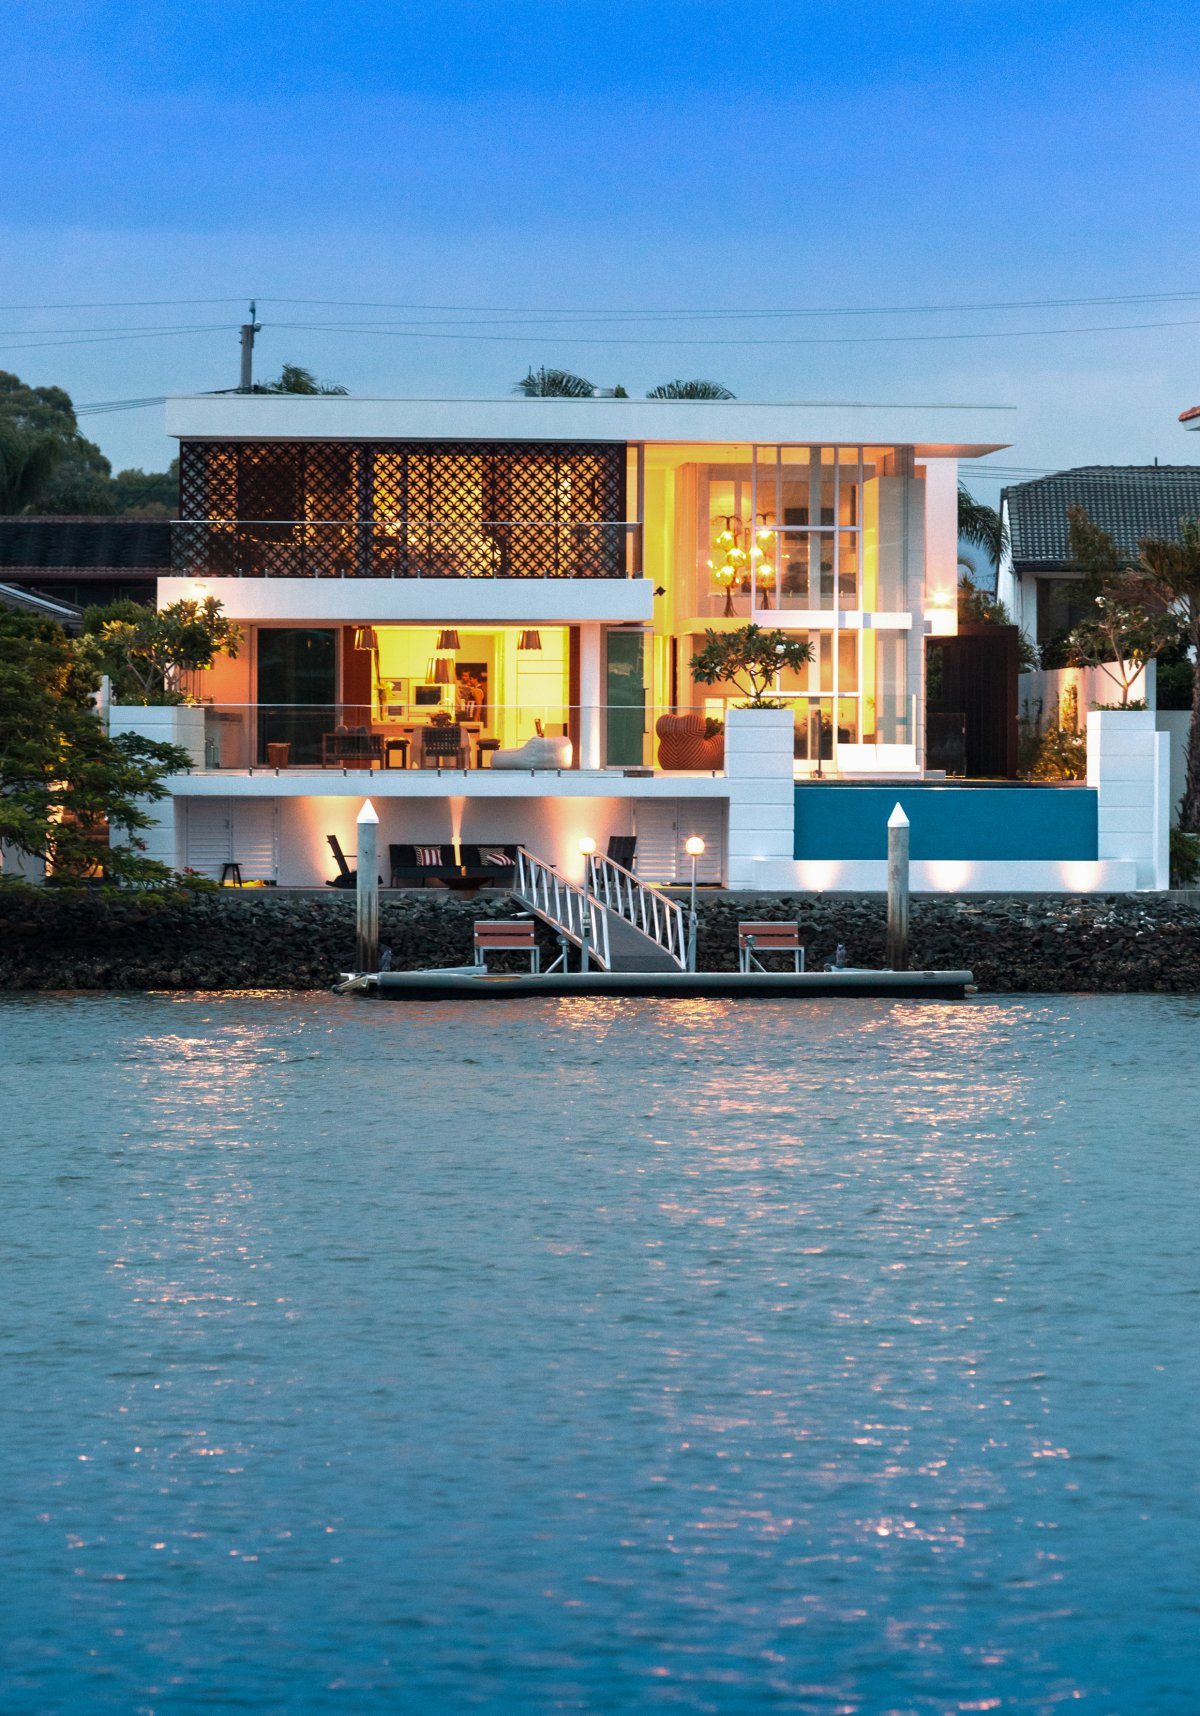 Купить дом в австралии на берегу моря снять дом в испании на берегу